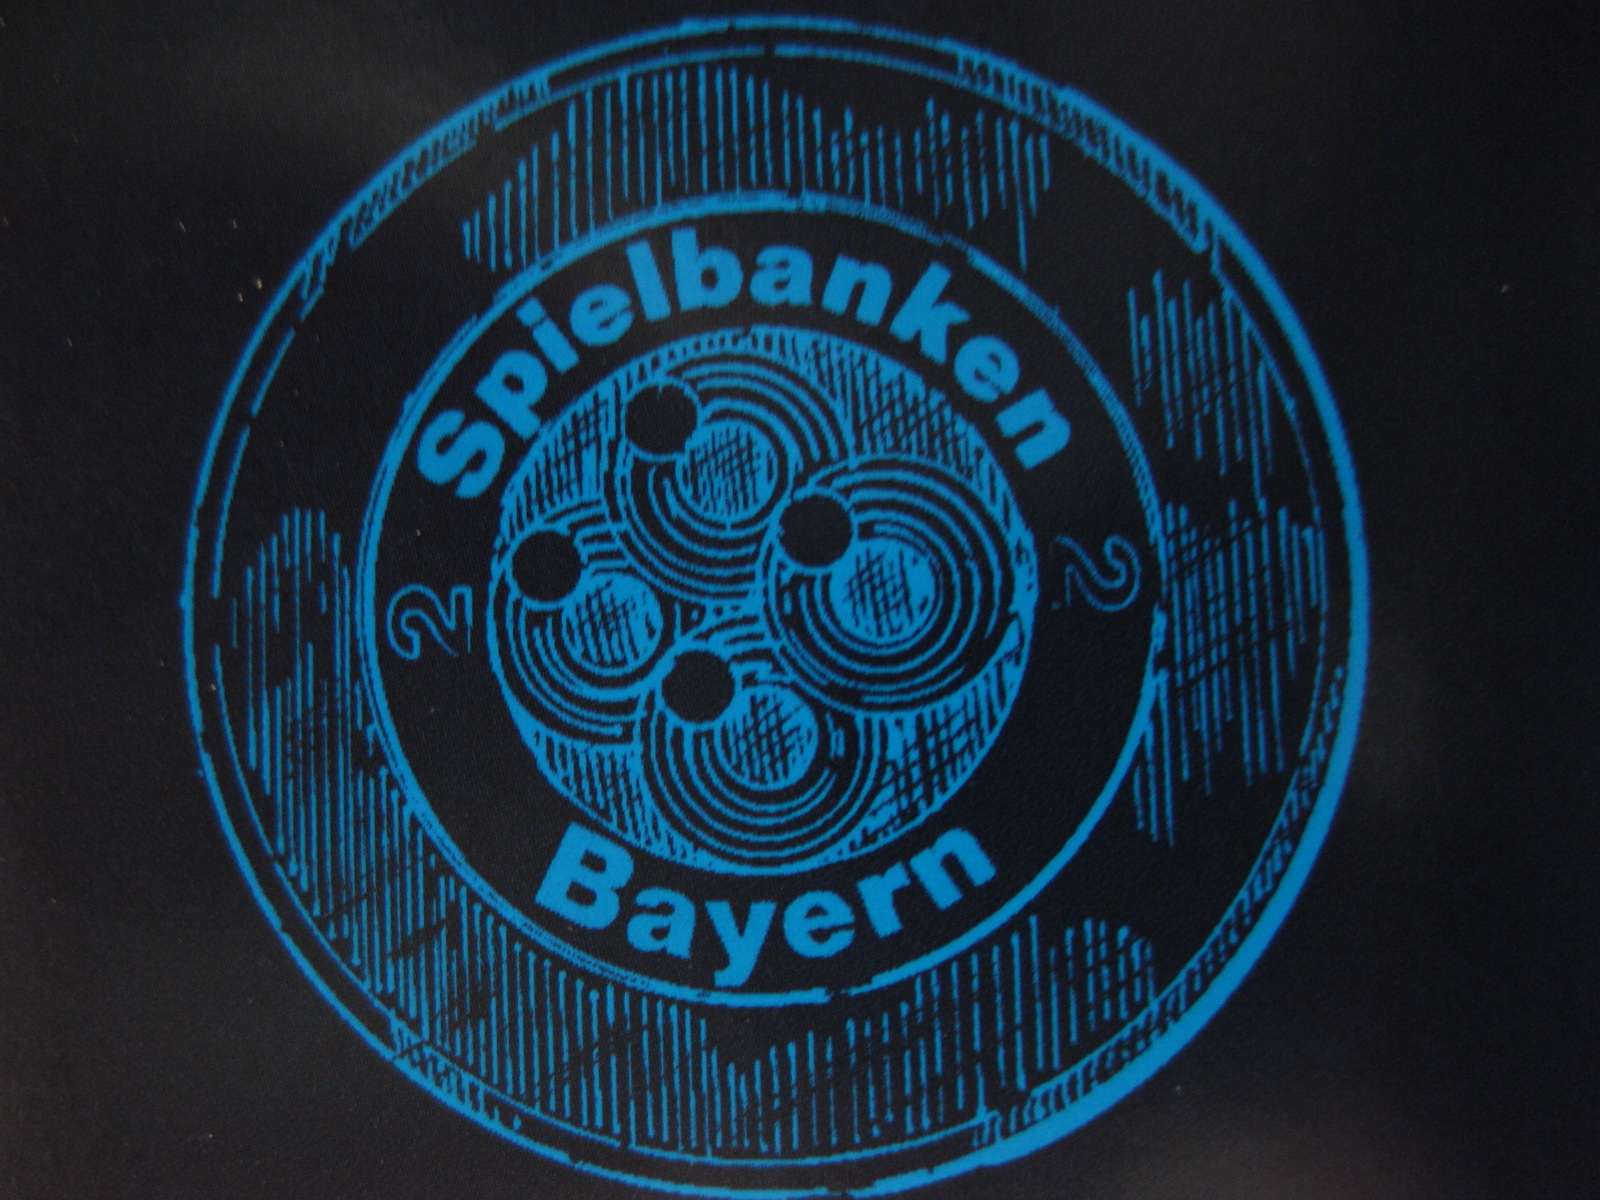 Bayerische Spielbank